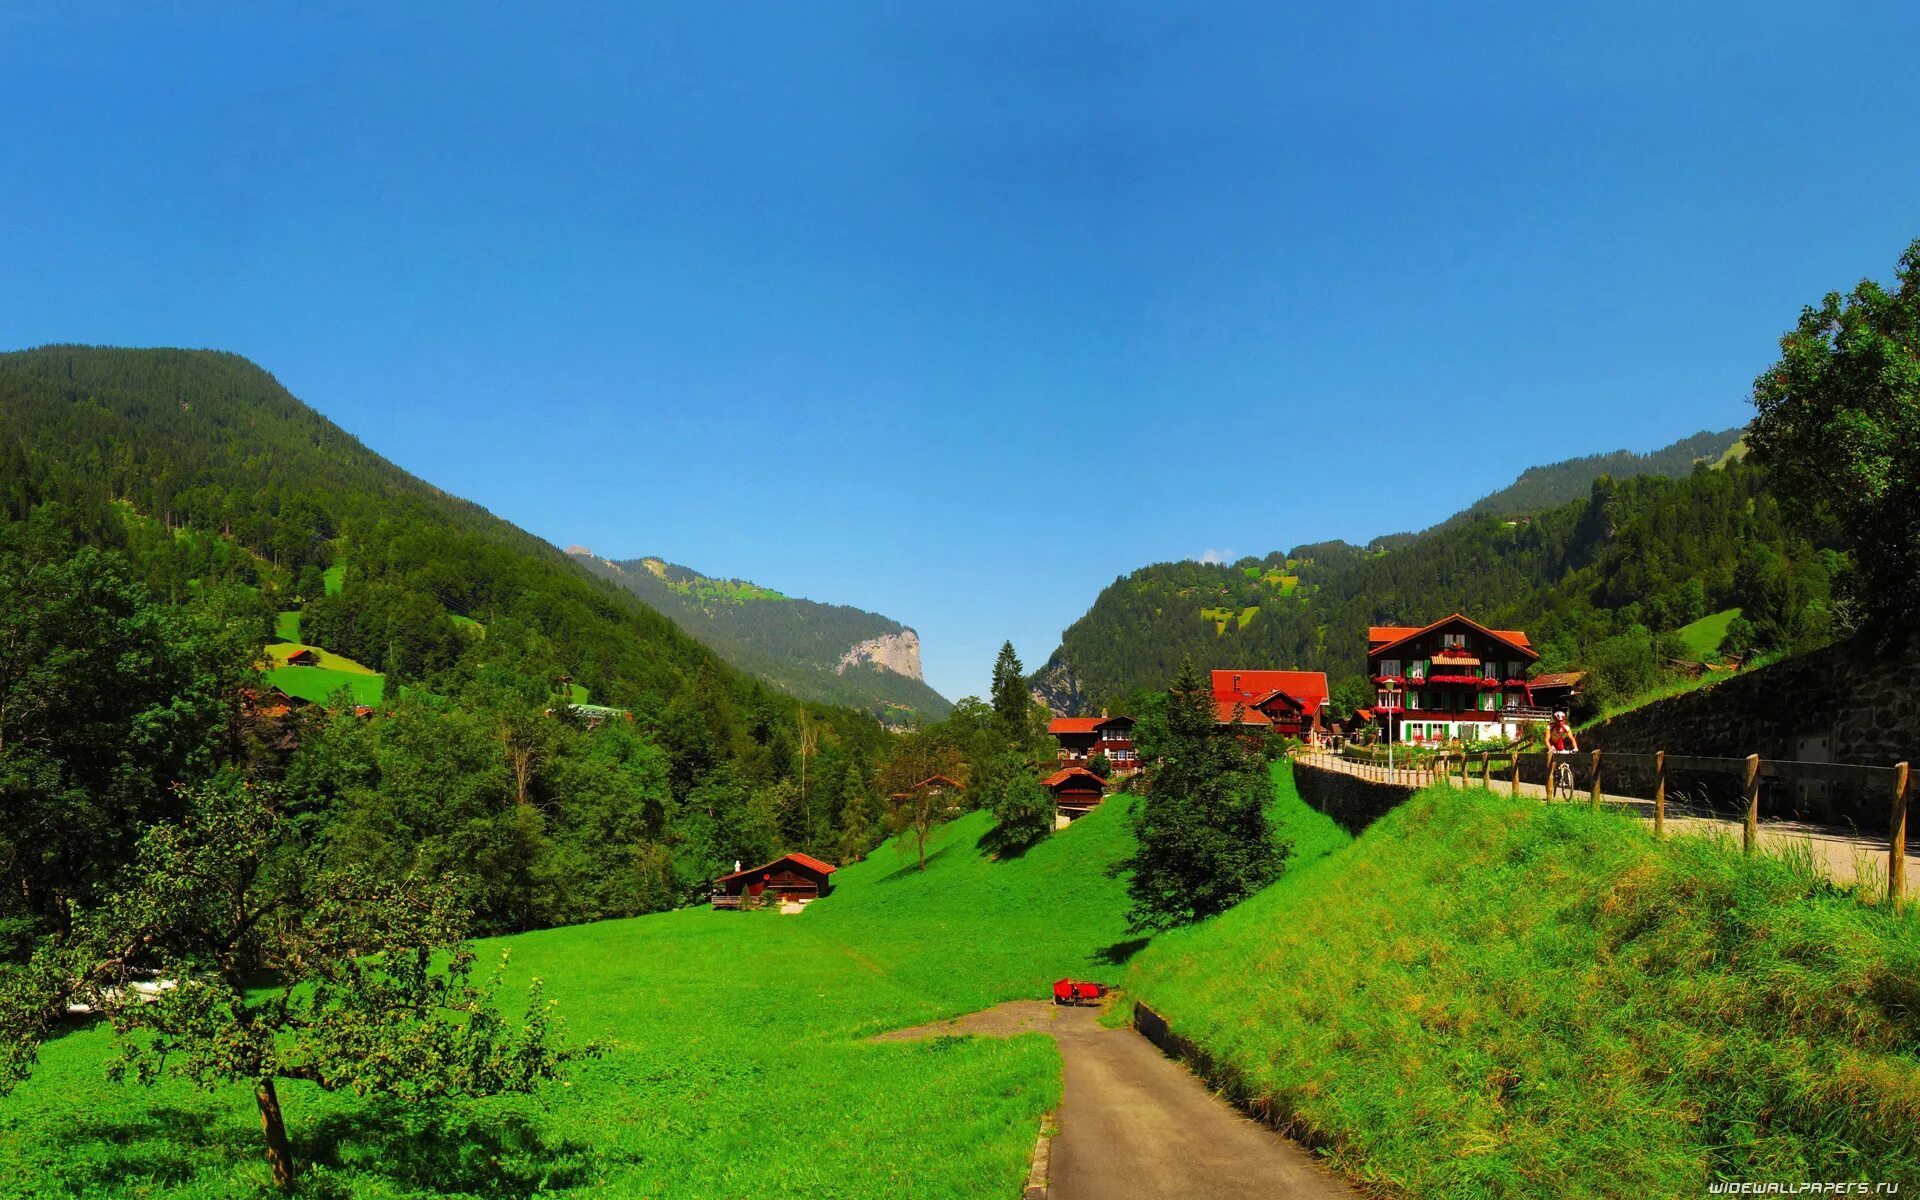 X village. Лаутербруннен Швейцария. Швейцария Берн горы. Lauterbrunnen Швейцария дорога. Швейцария 1920 1080.